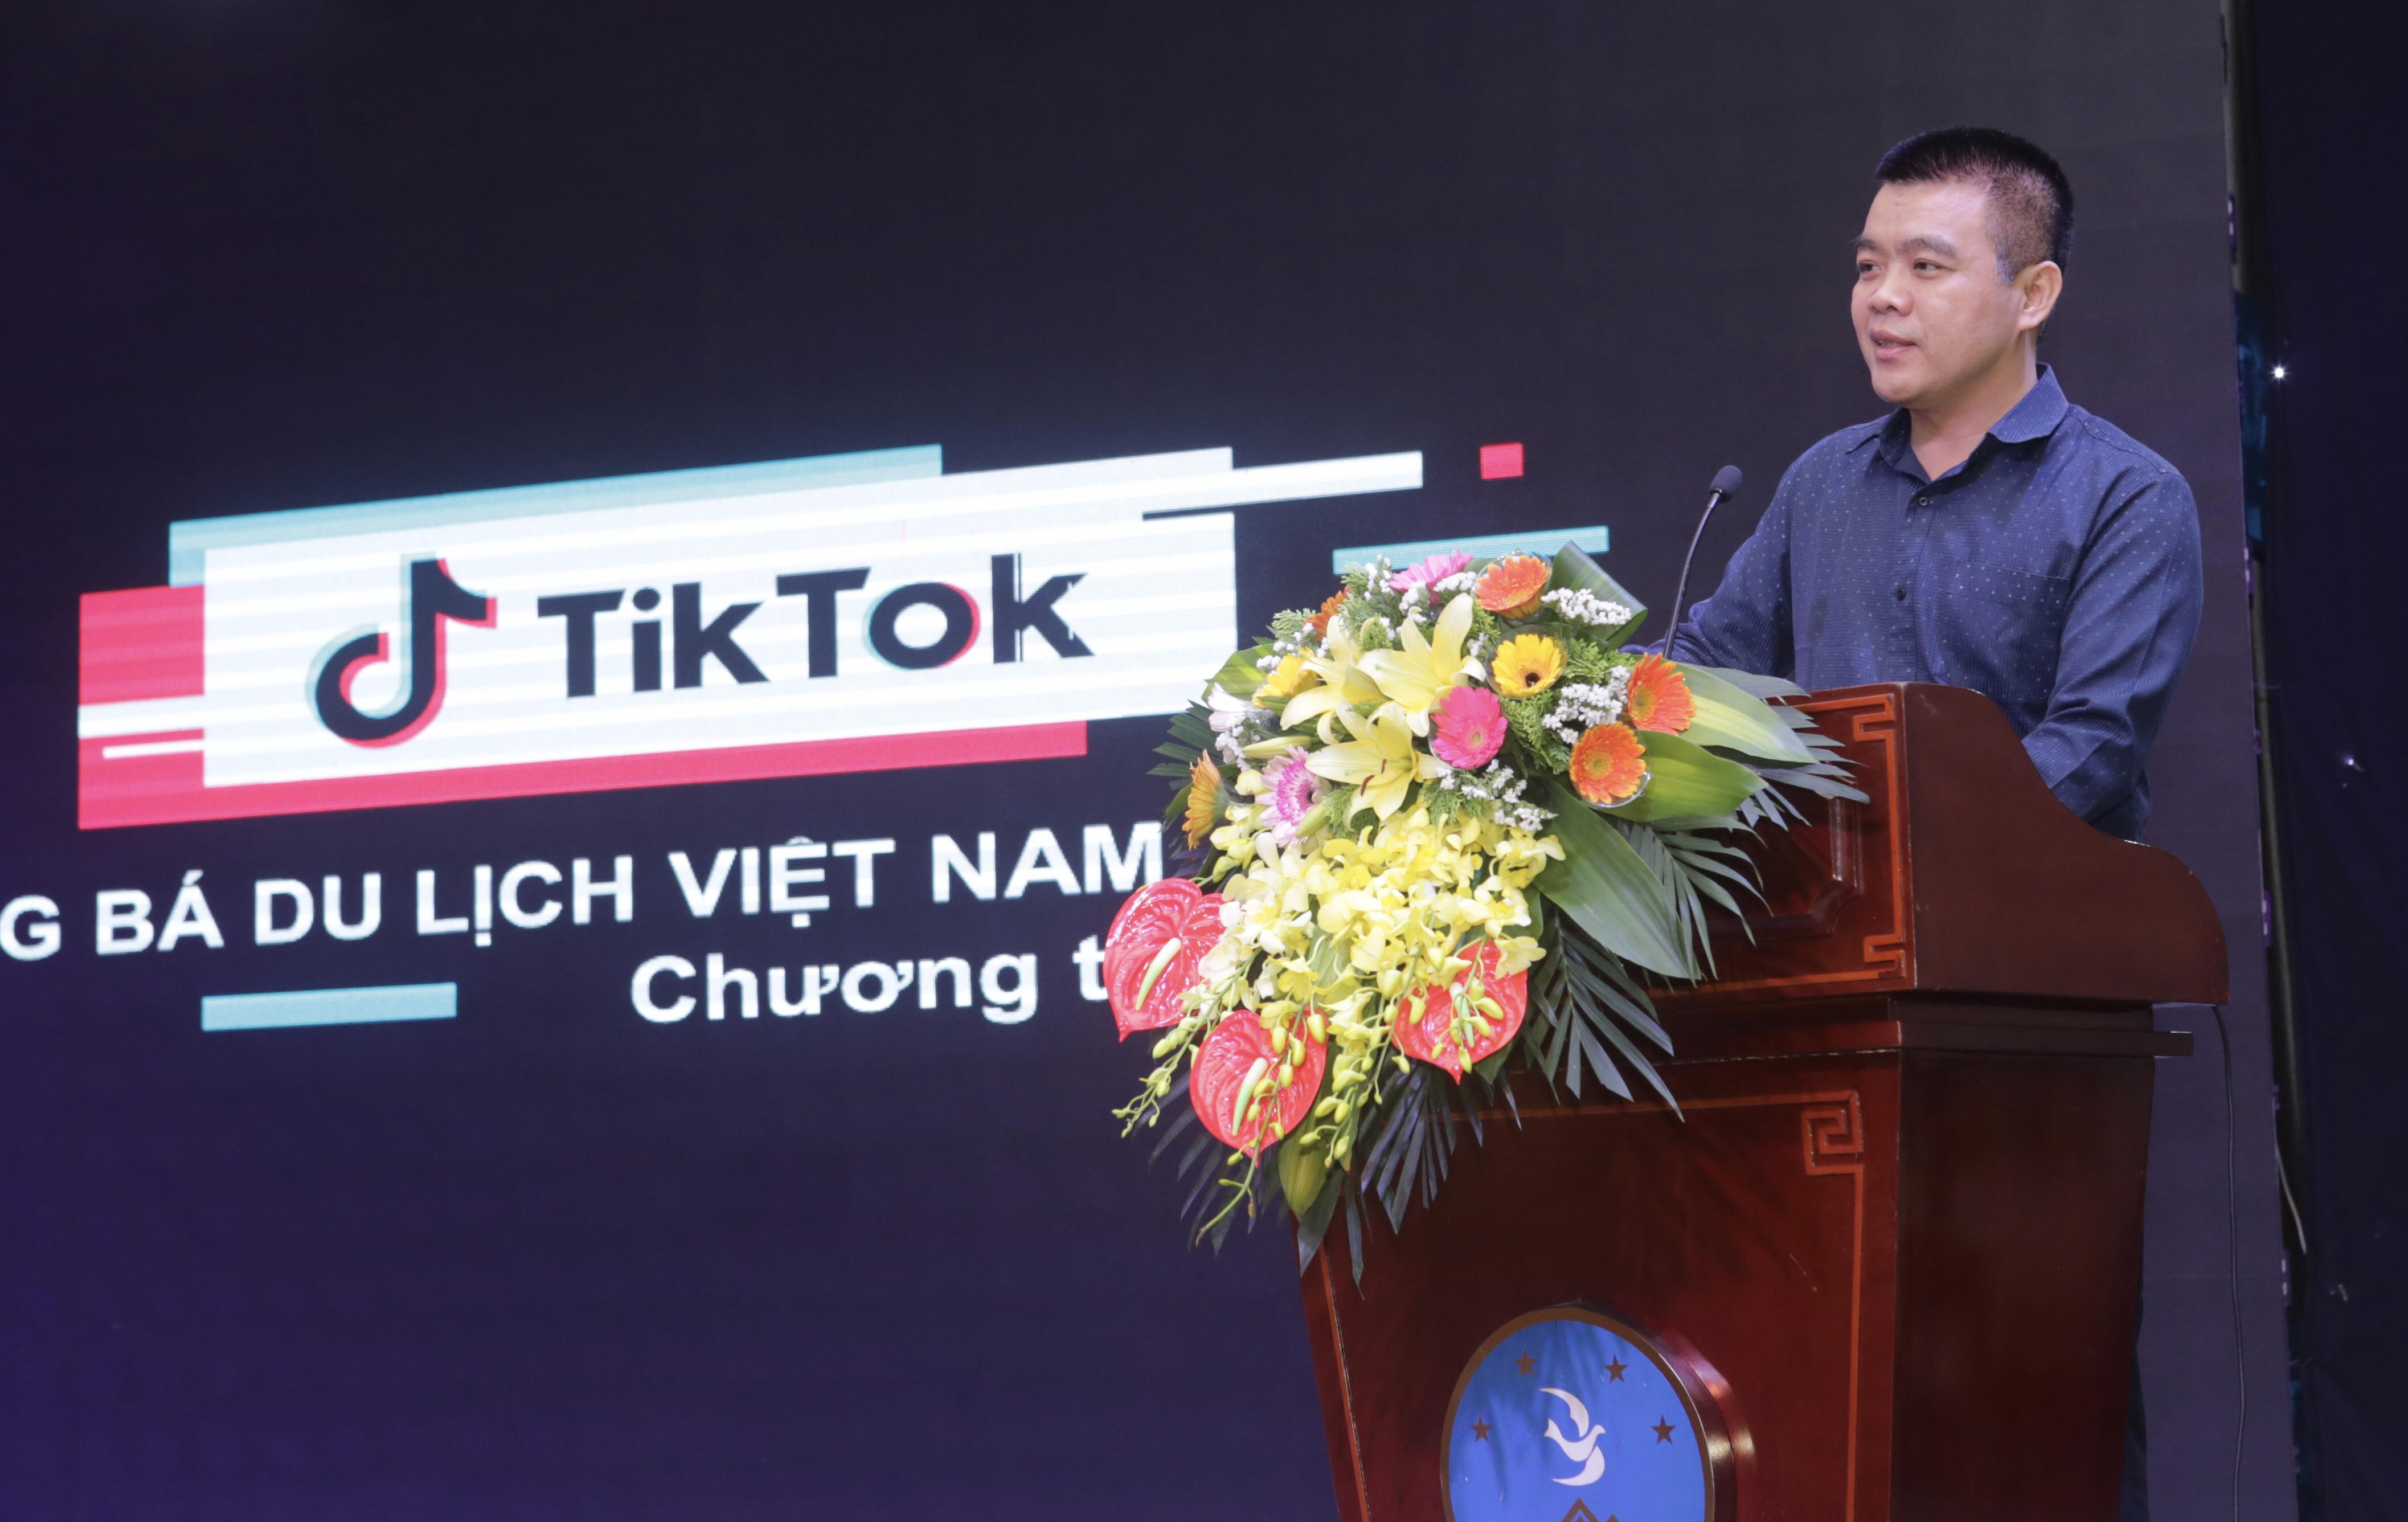 #HelloNinhBinh - Chiến dịch quảng bá du lịch Ninh Bình trên TikTok